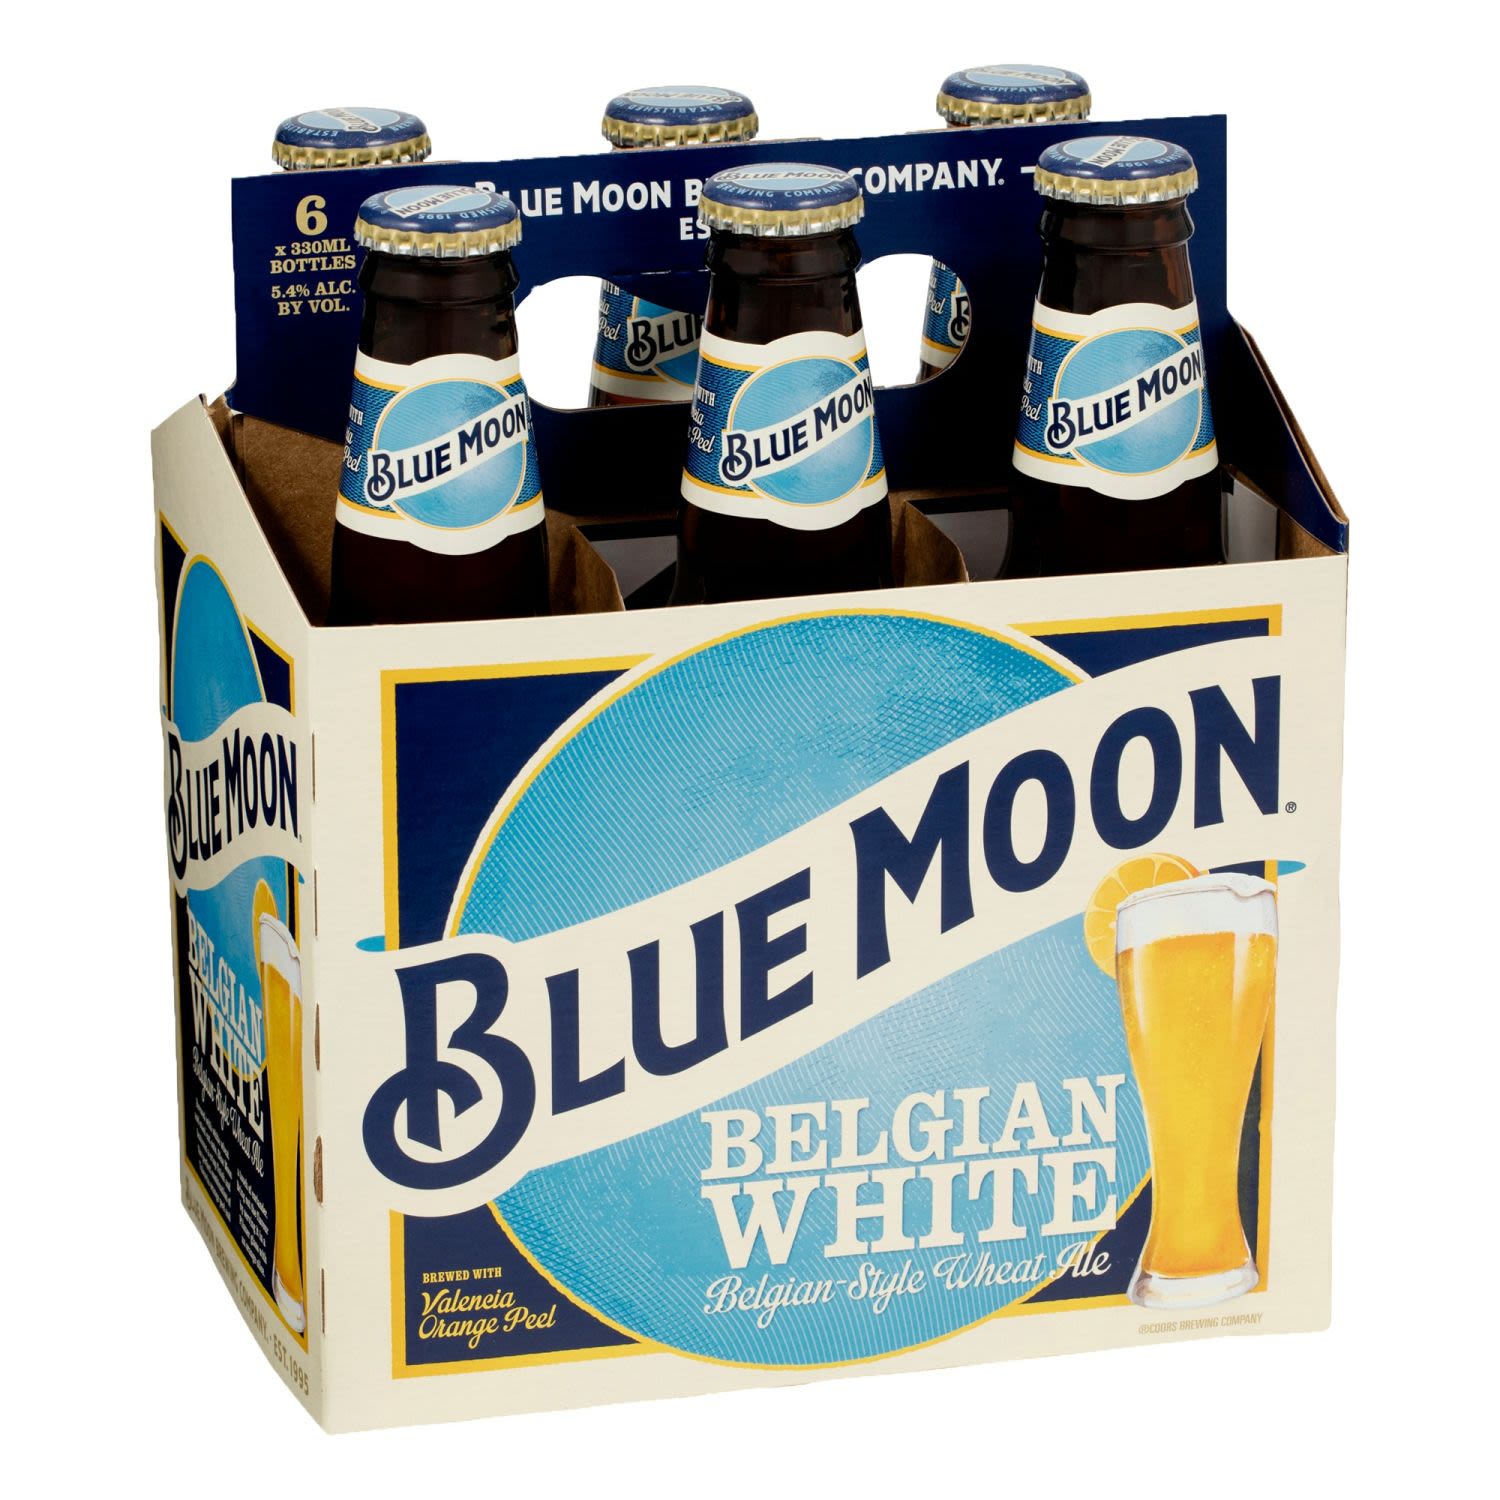 Blue Moon Belgian White Bottle 300mL 6 Pack